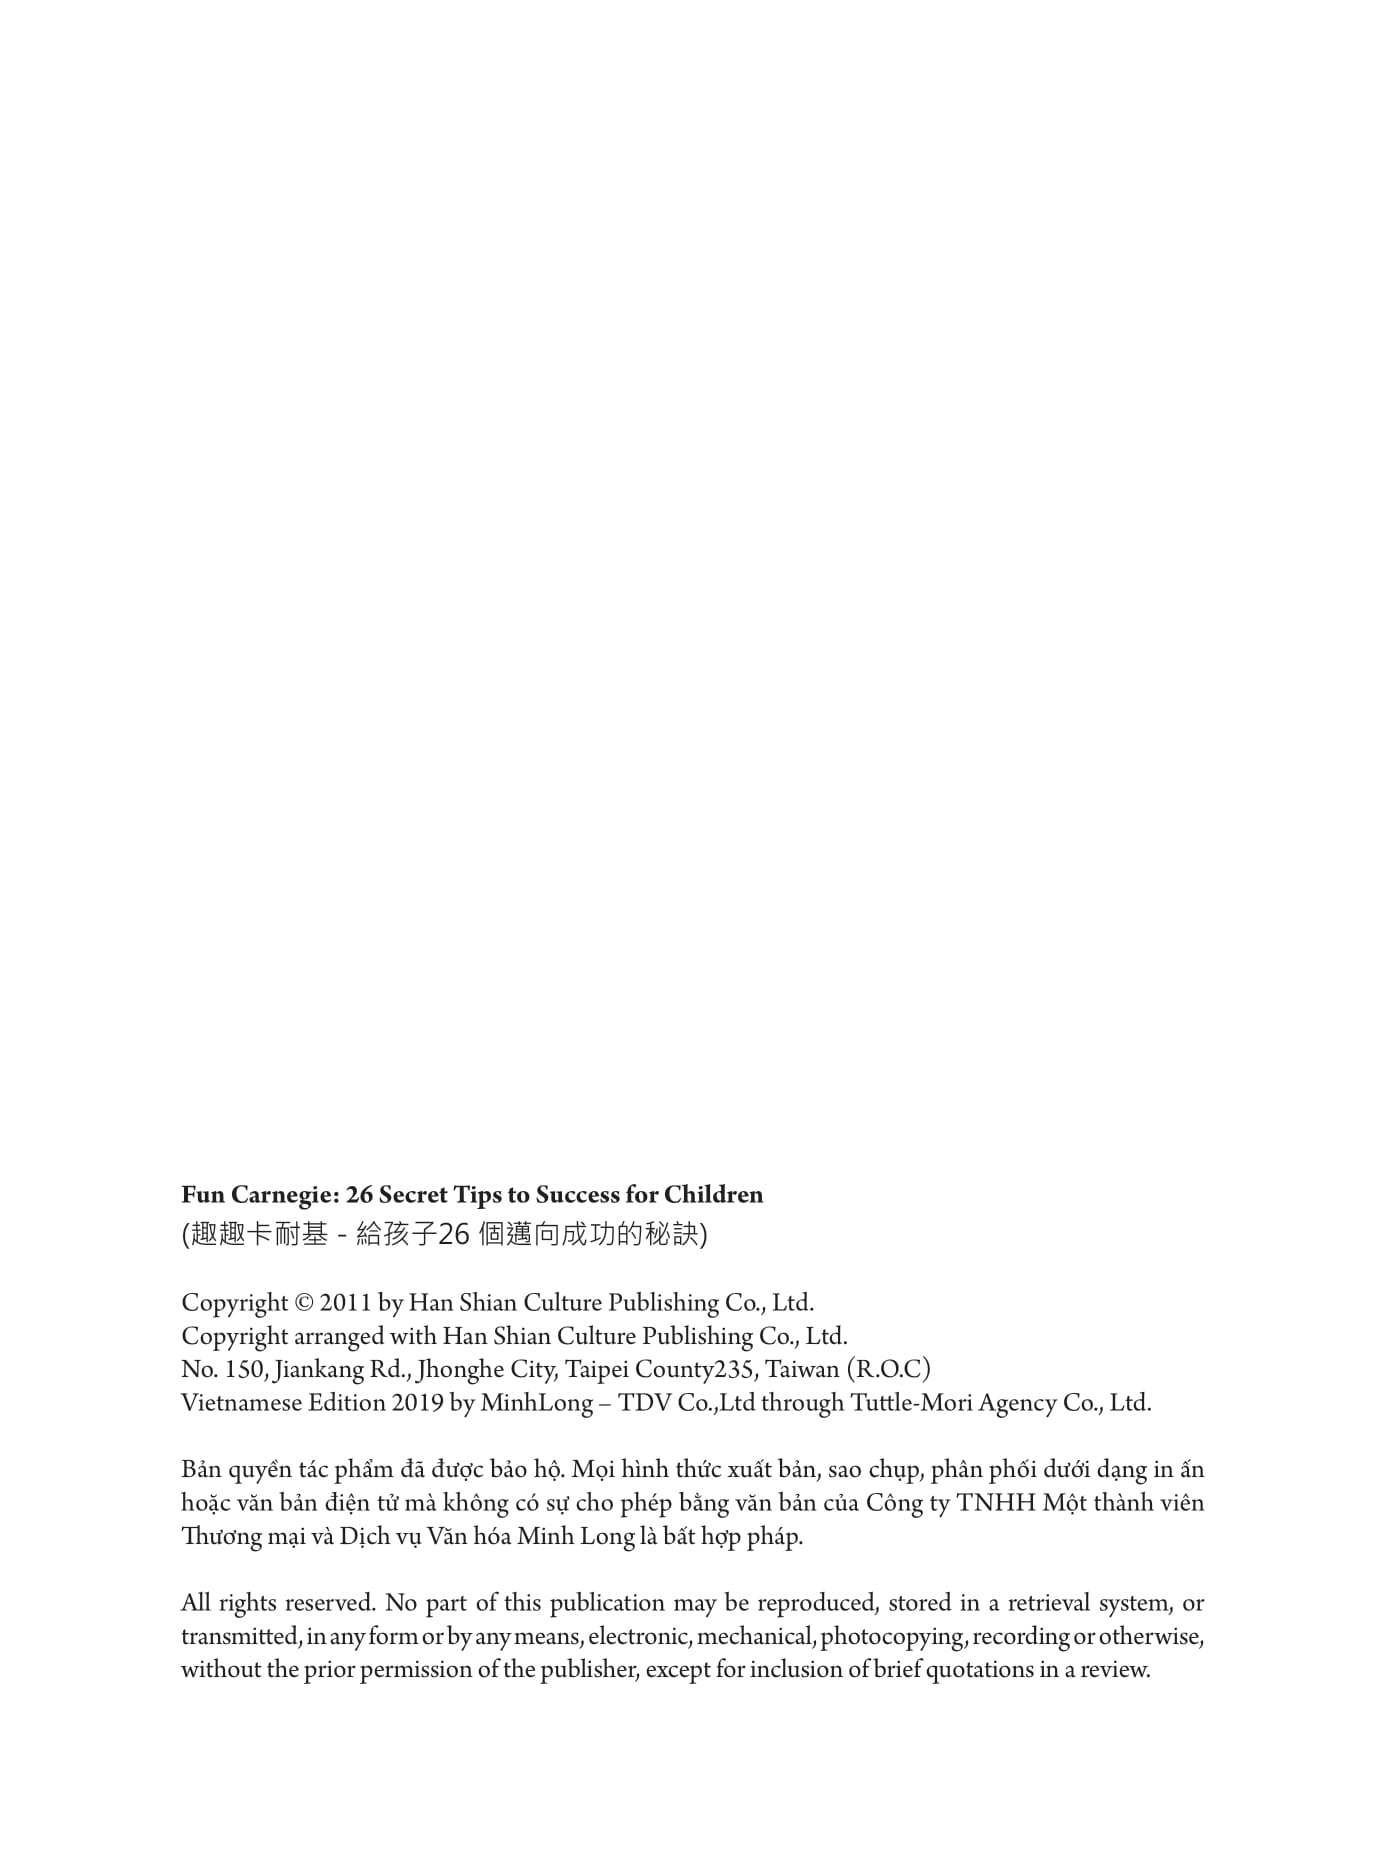 Lời Nhắn Nhủ Từ Carnegie Dành Cho Thanh Thiếu Niên - 24 Bí Quyết Dẫn Dắt Bạn Bước Tới Thành Công PDF